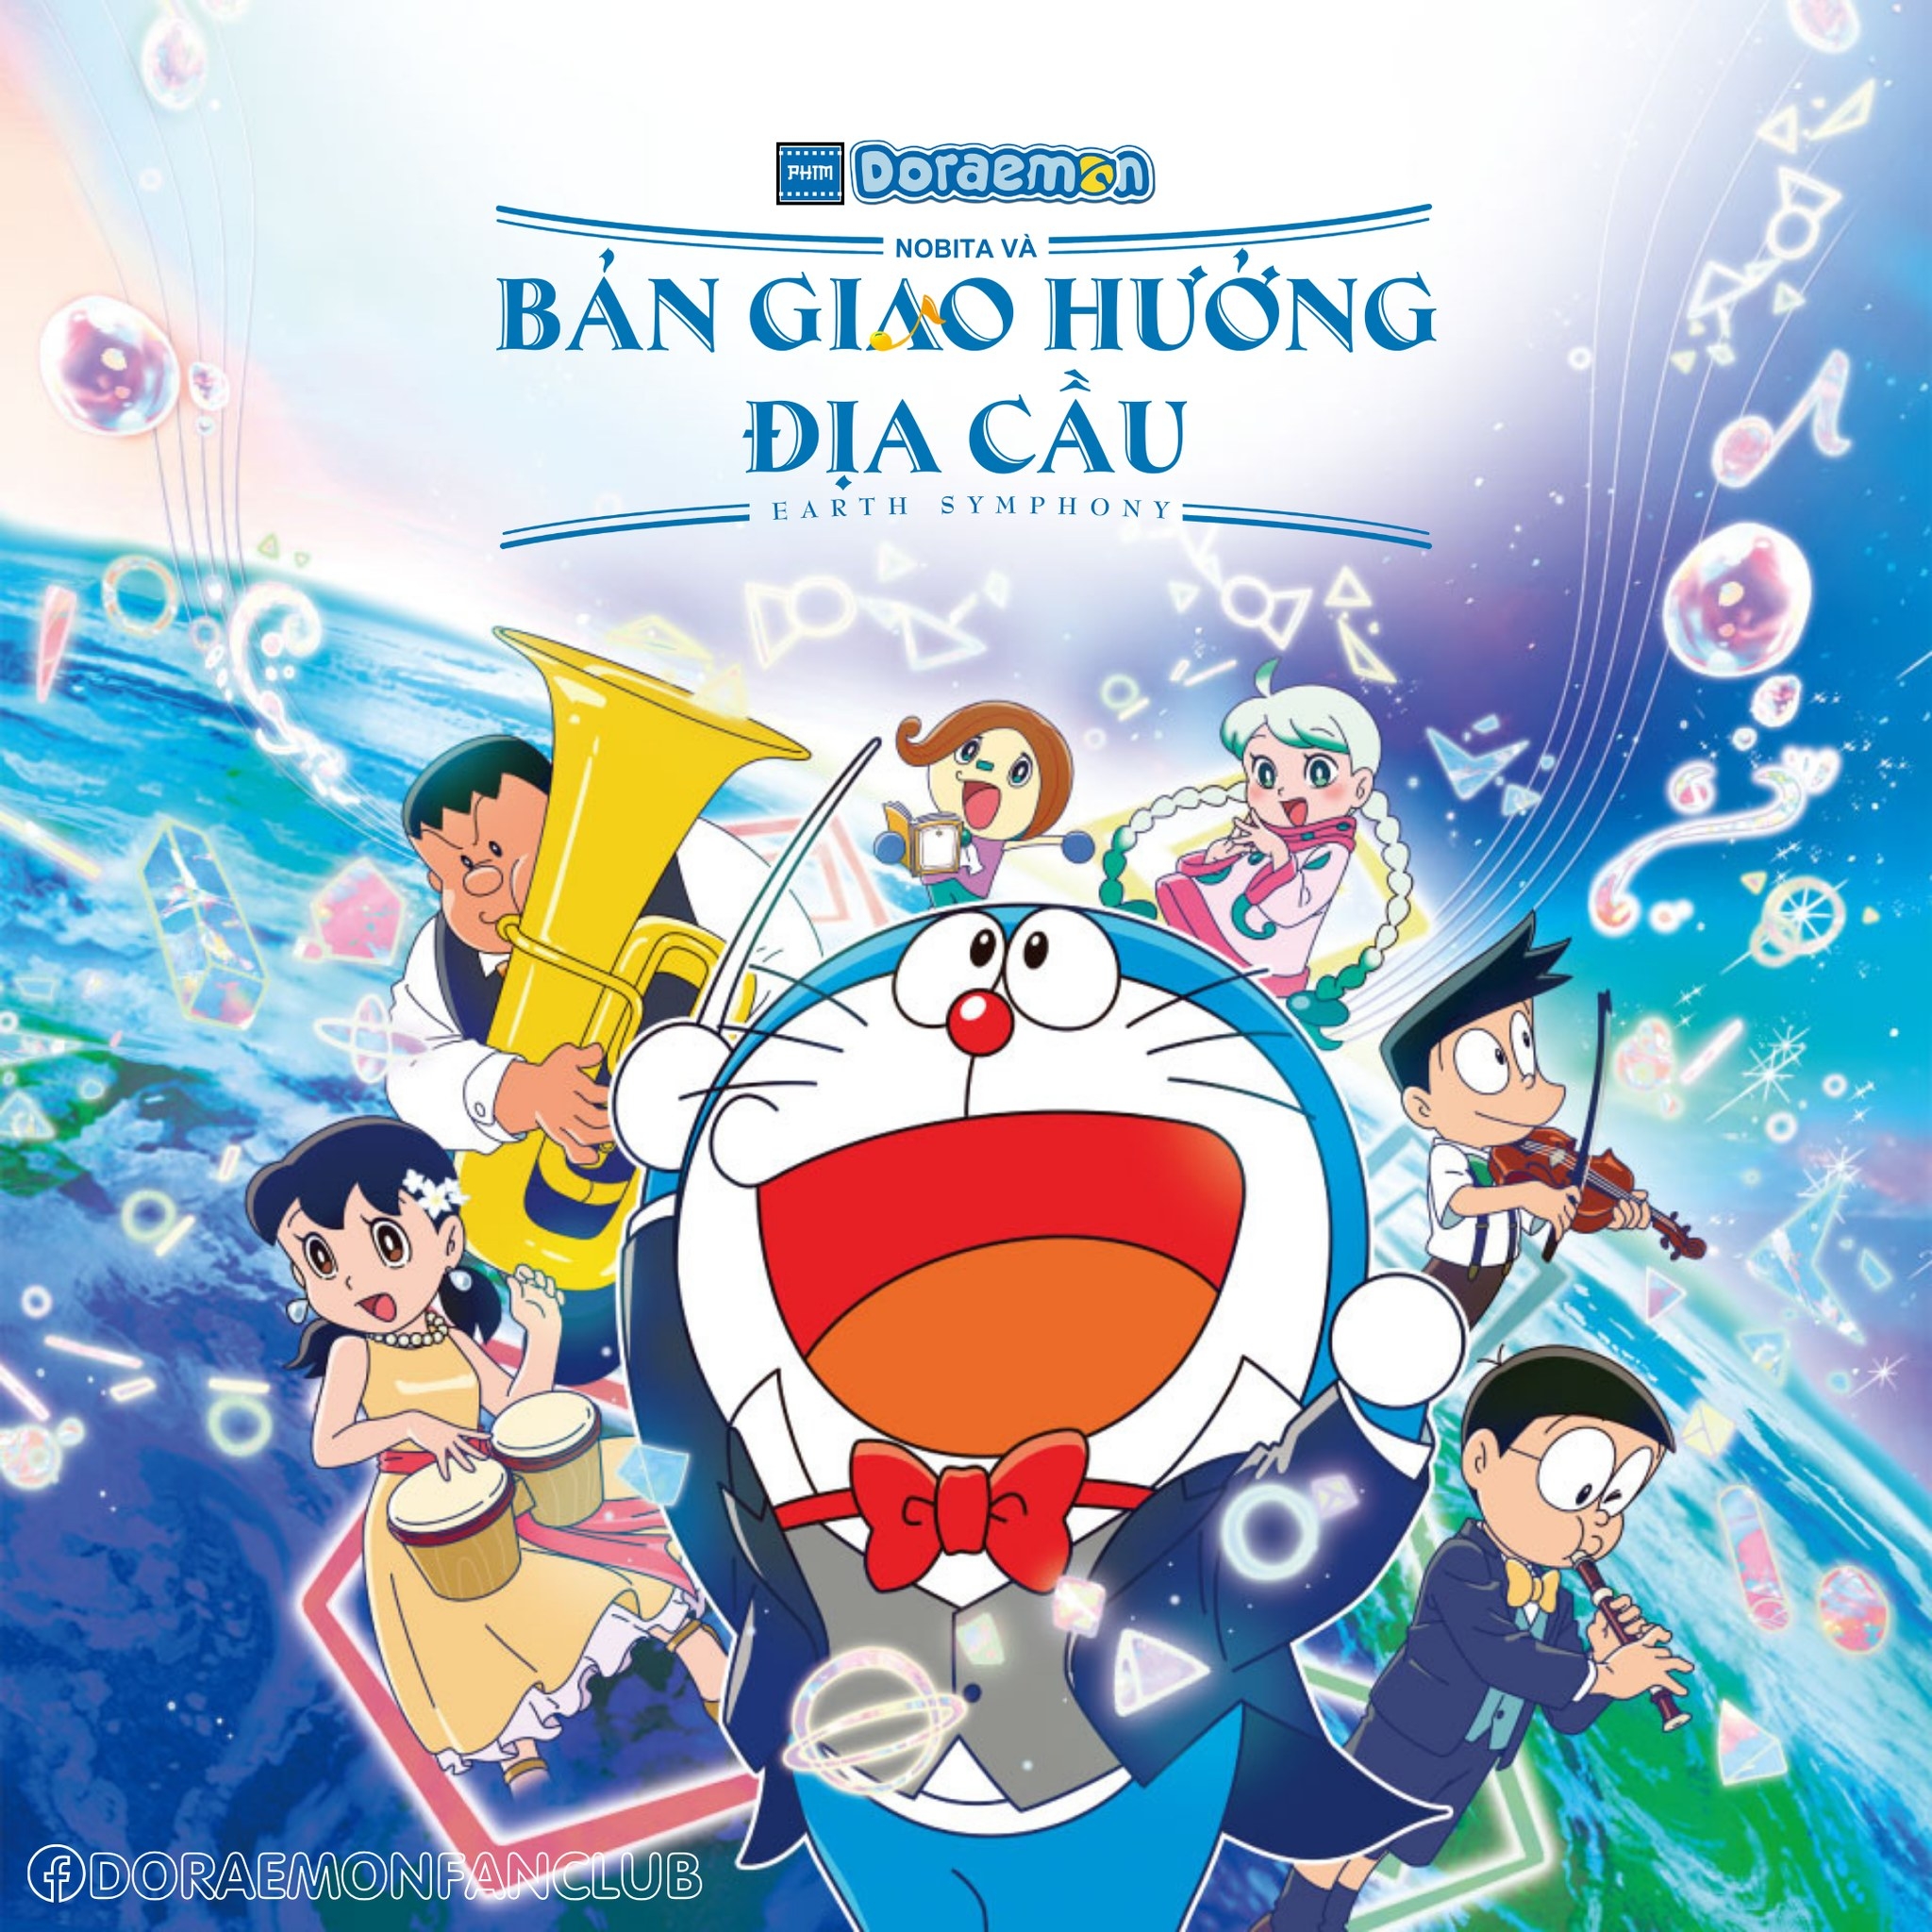 “Doraemon: Nobita và bản giao hưởng địa cầu”